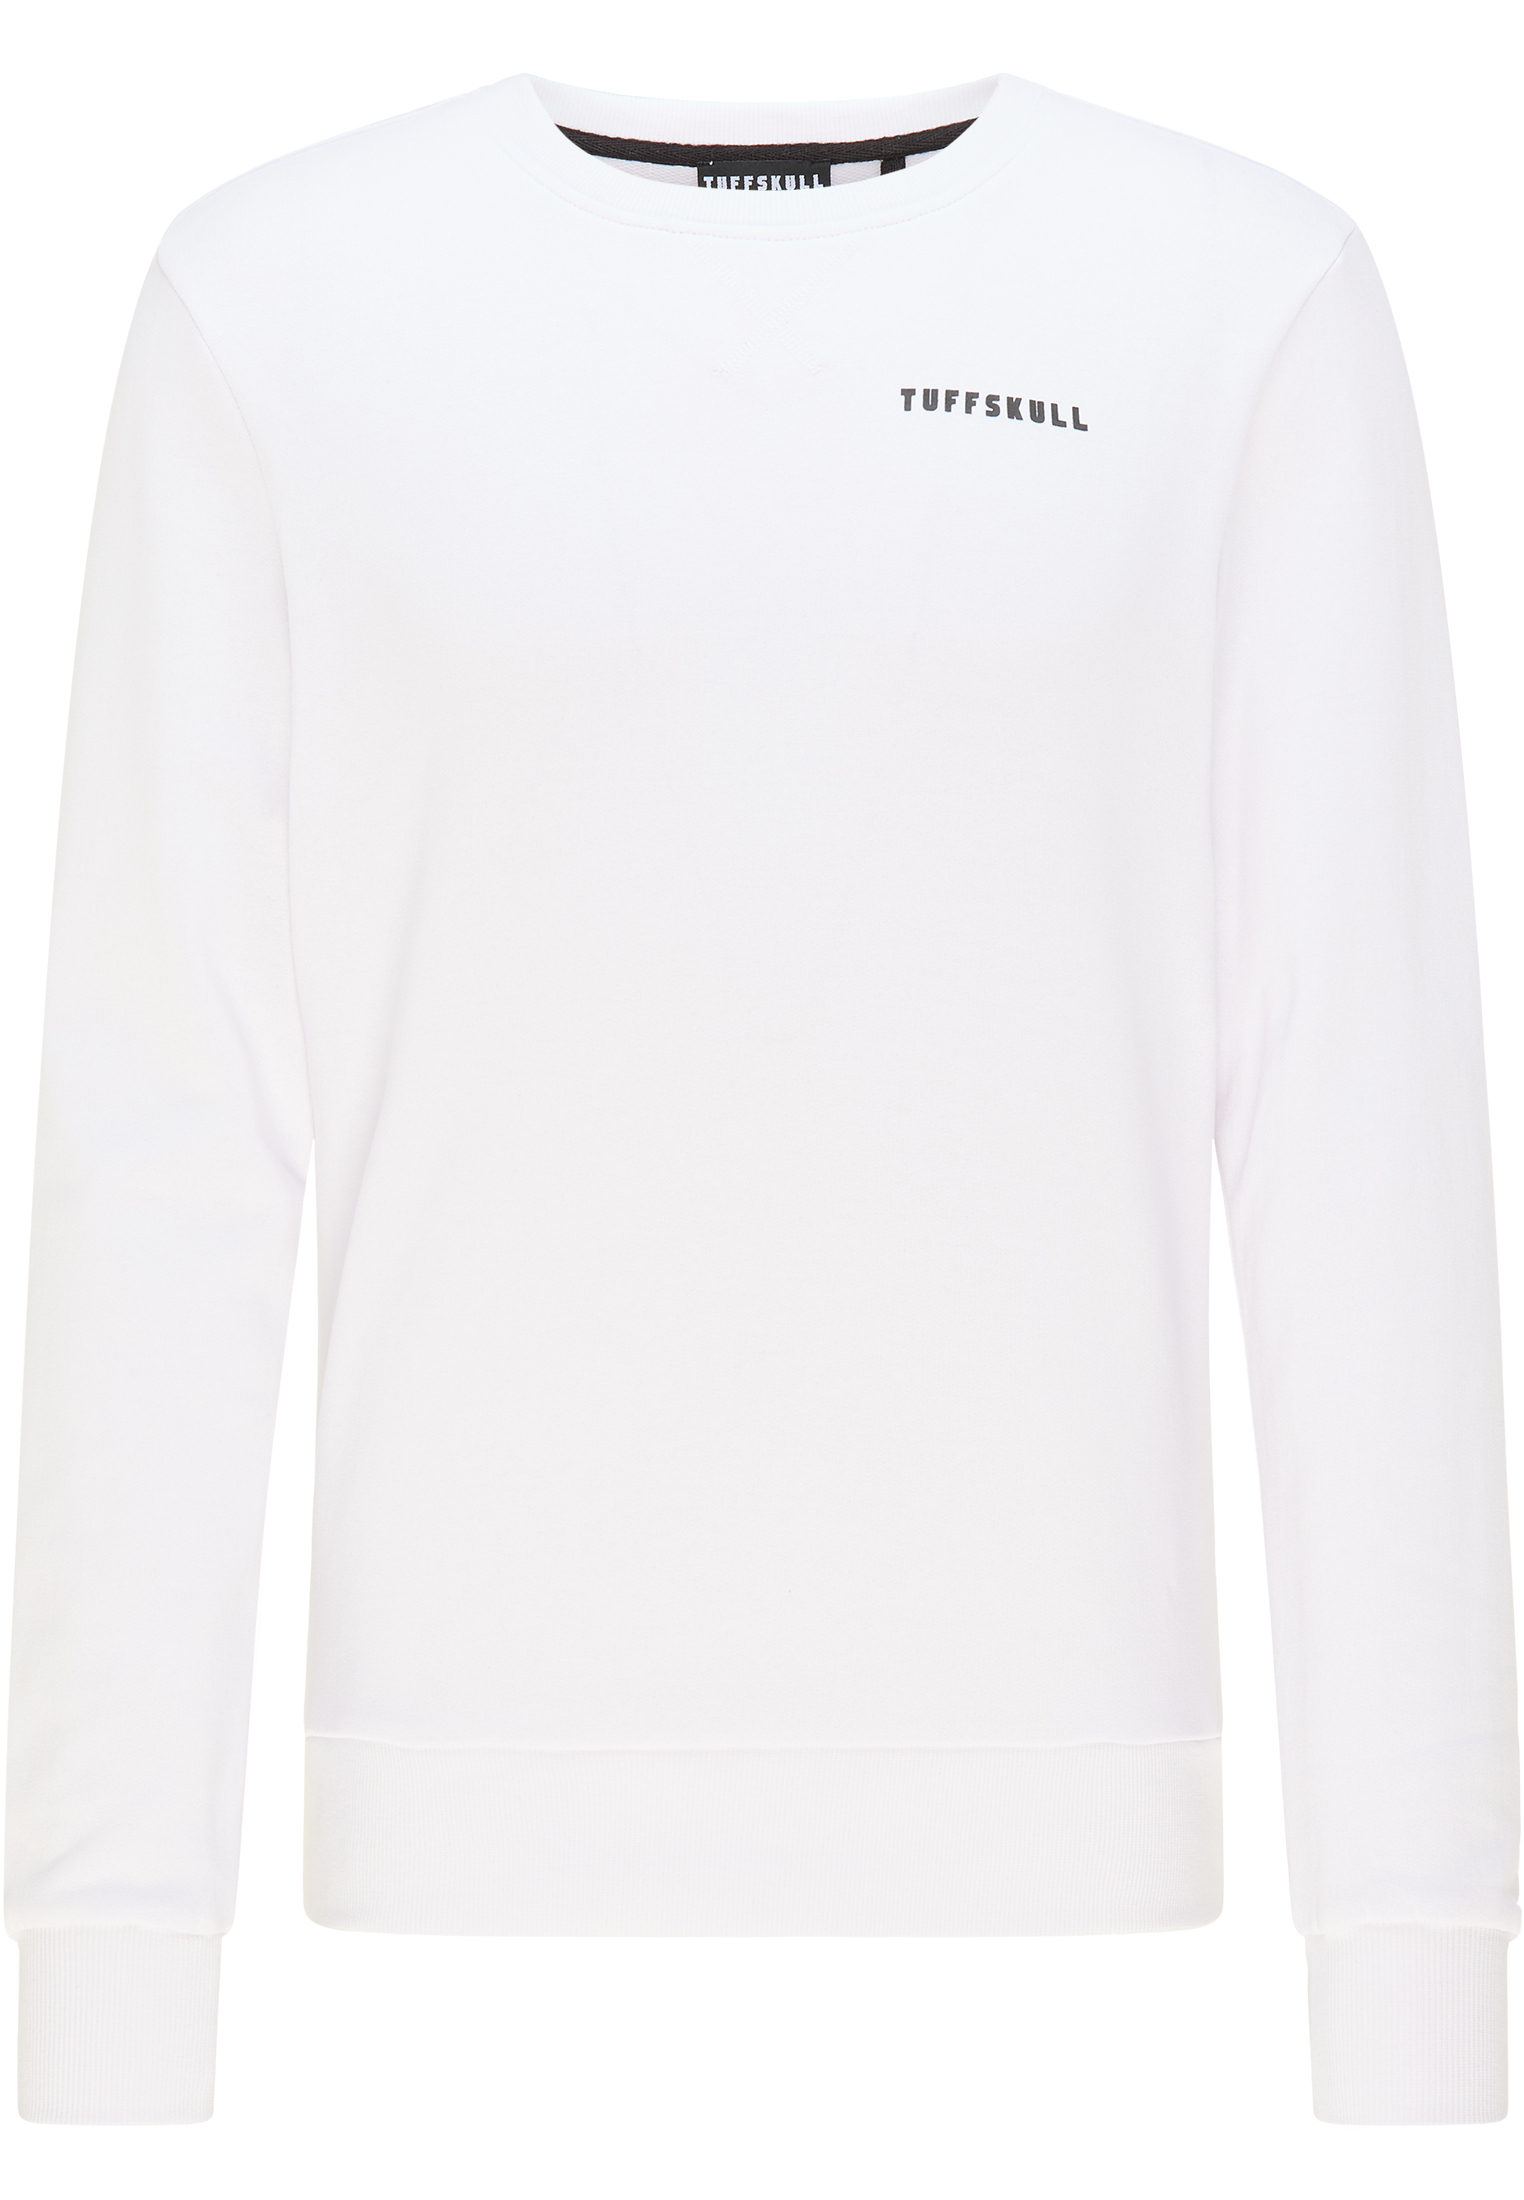 Mężczyźni Odzież TUFFSKULL Bluzka sportowa w kolorze Białym 